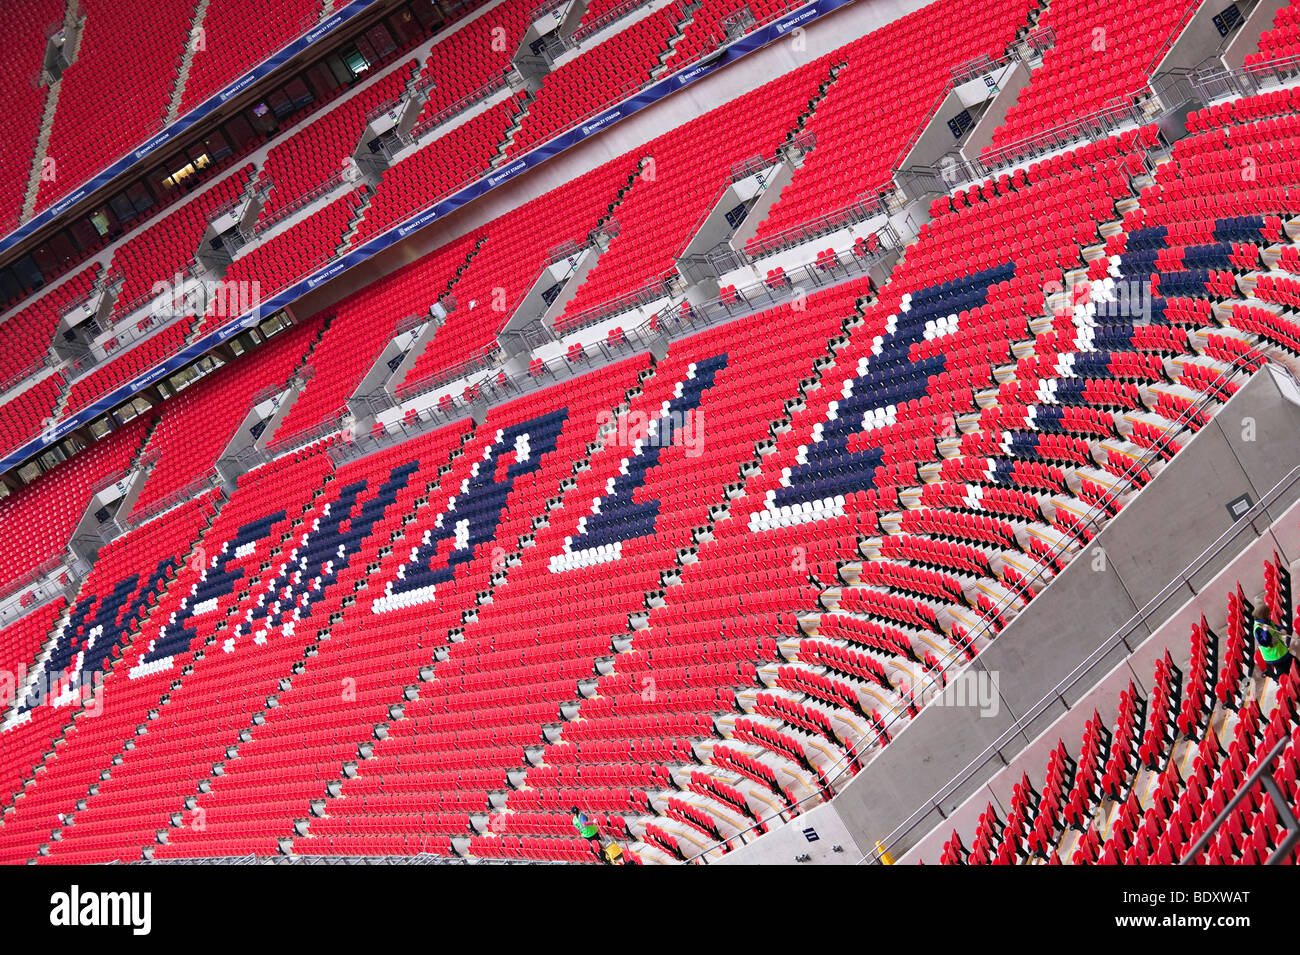 Il nuovo stadio di Wembley Foto Stock